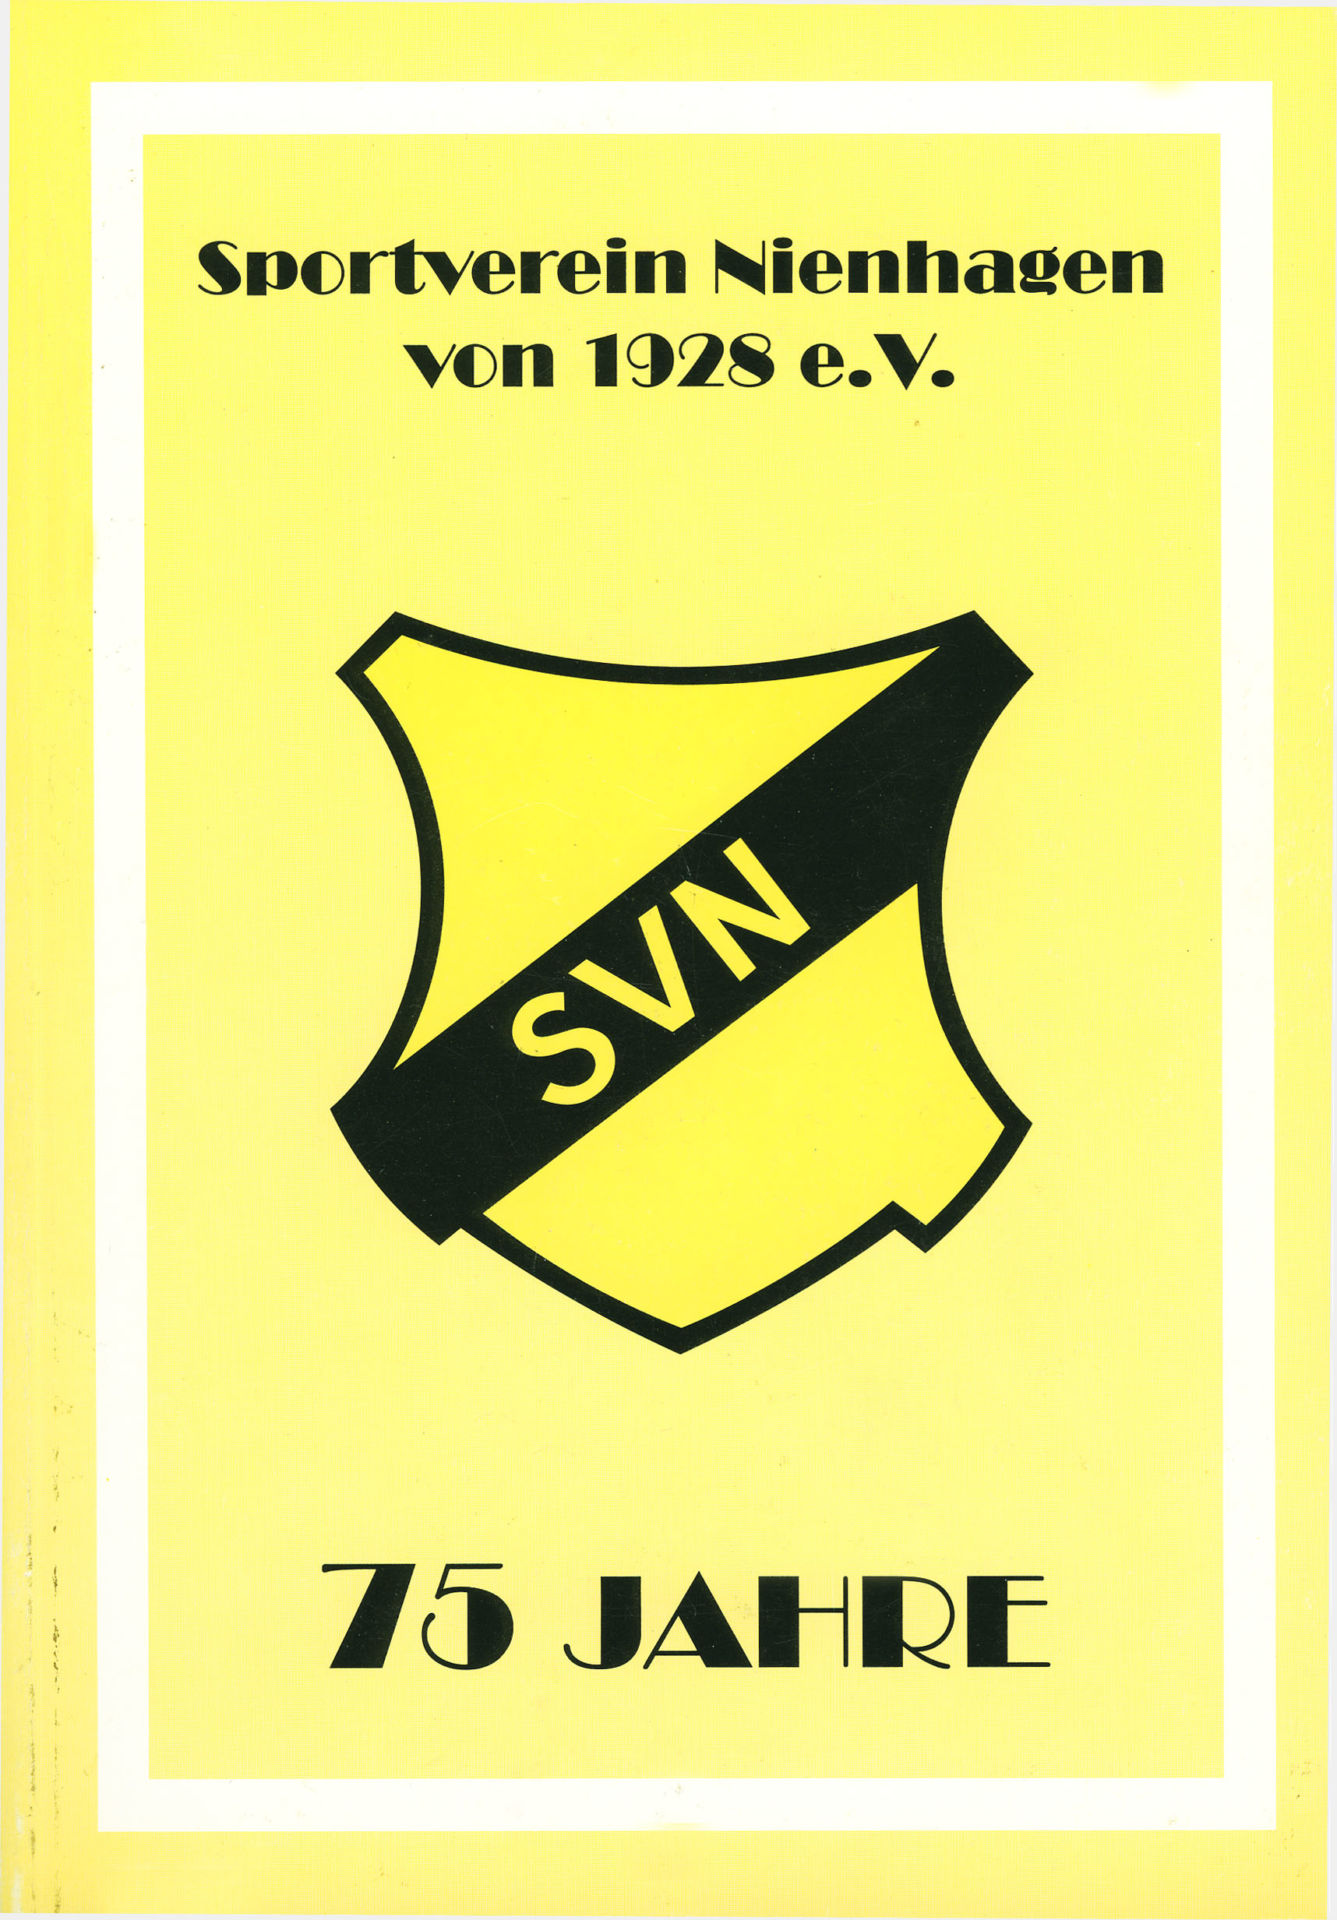 75 Jahre SV Nienhagen von 1928 e.V.